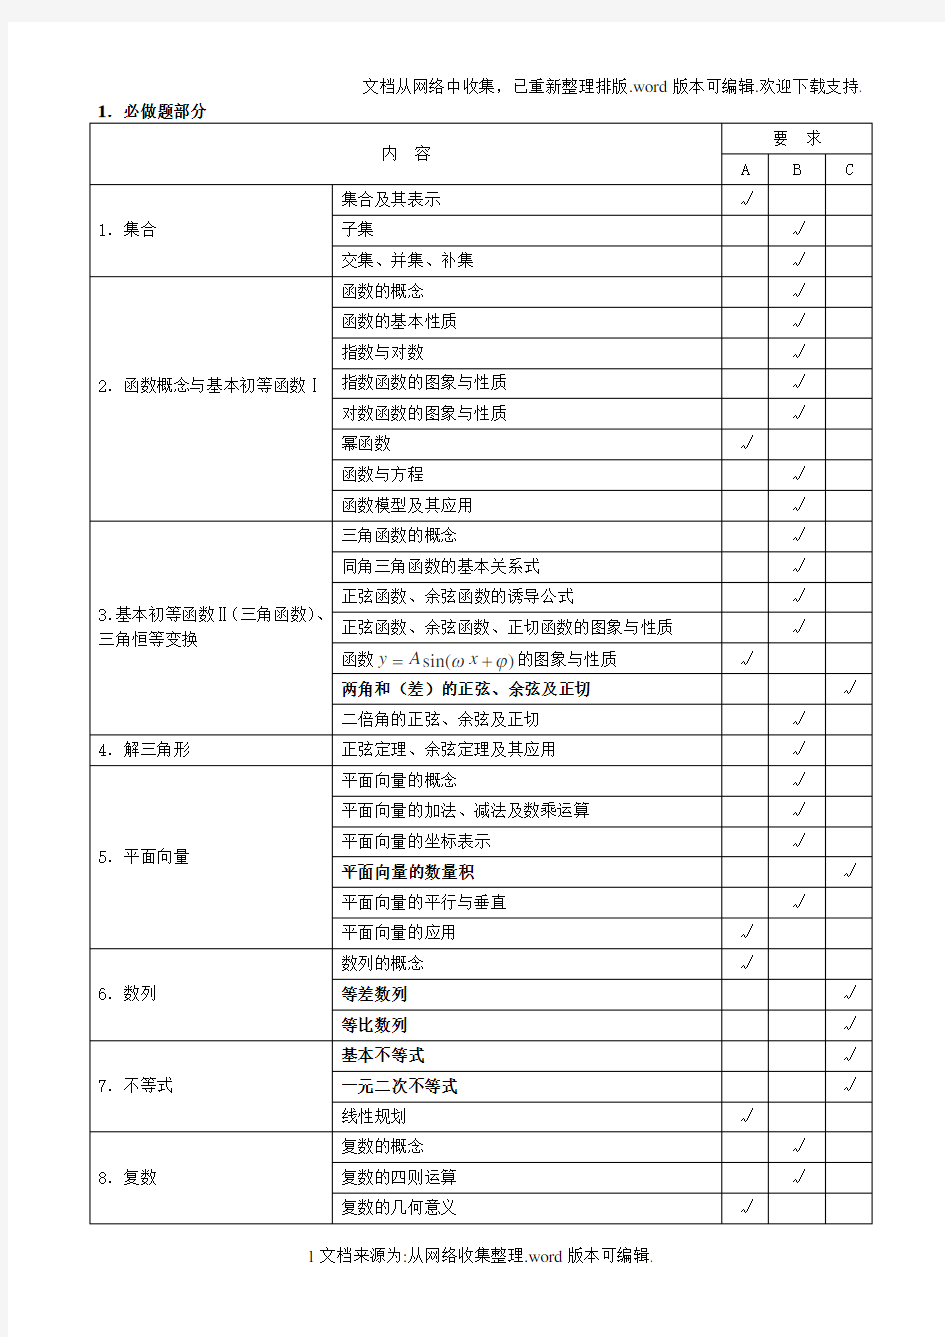 2020江苏省高考数学学科考试说明